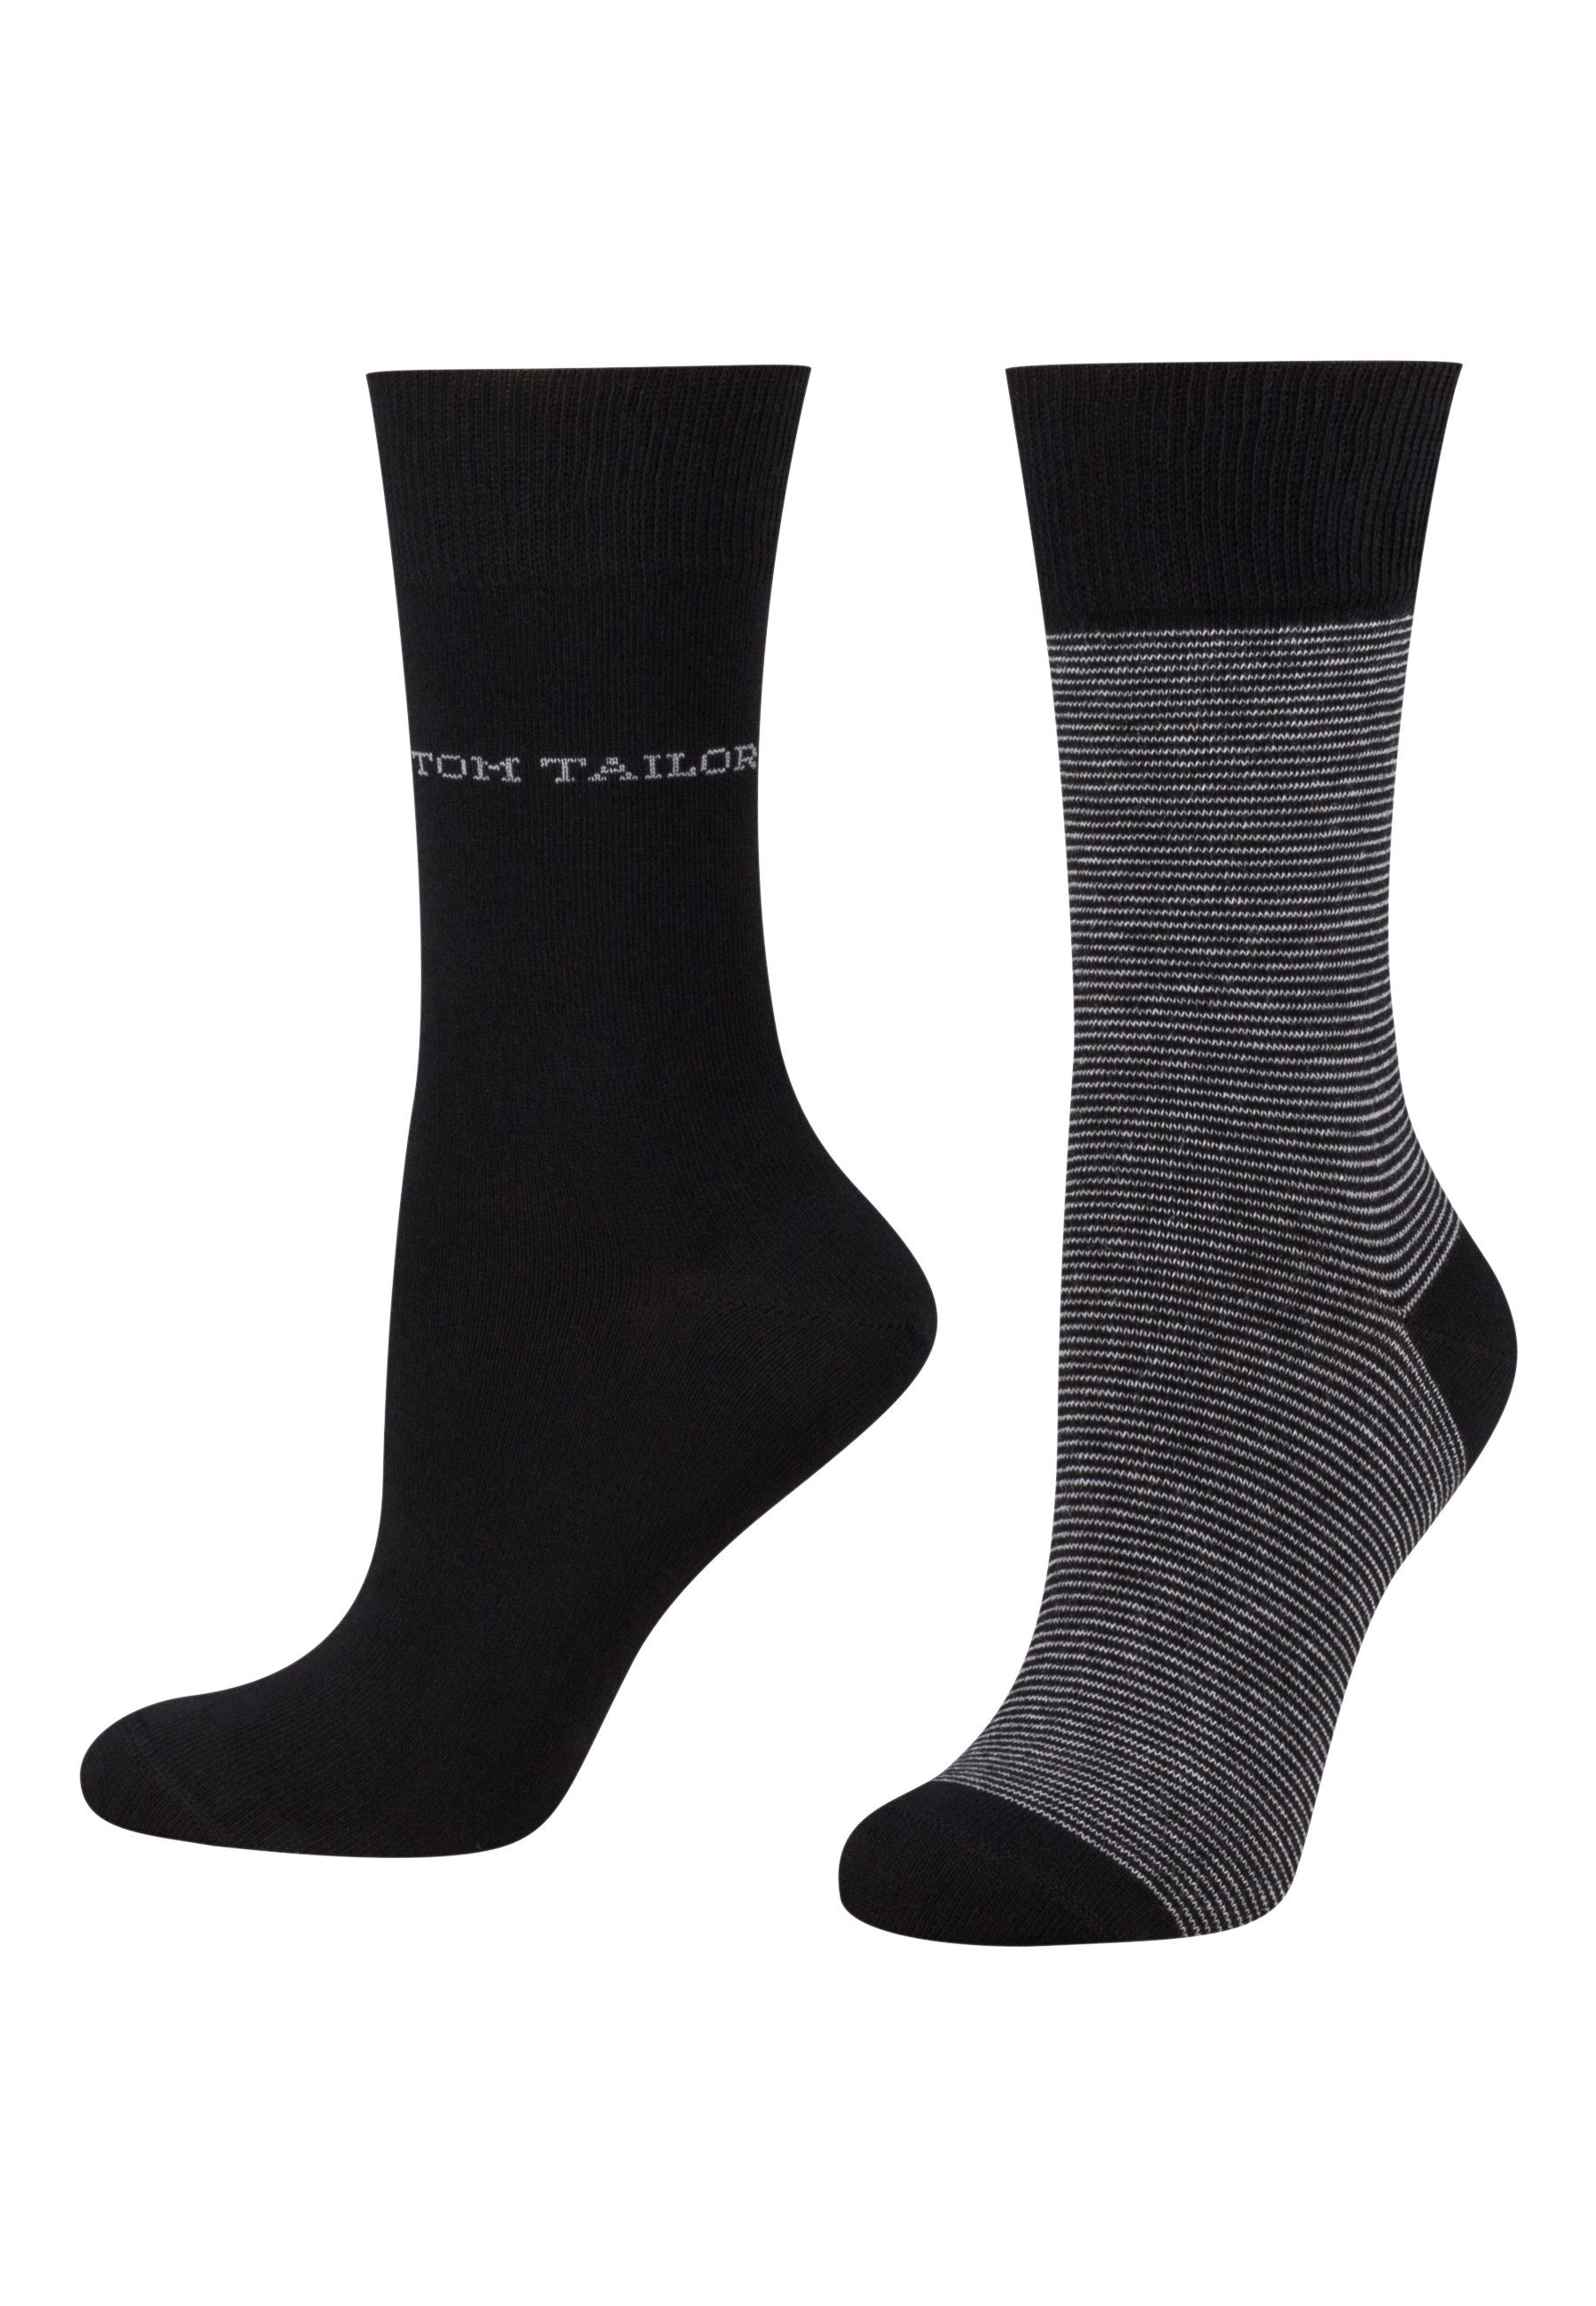 stripe 2er TAILOR socks women black Tailor 9521610042 basic Tom TOM Socken